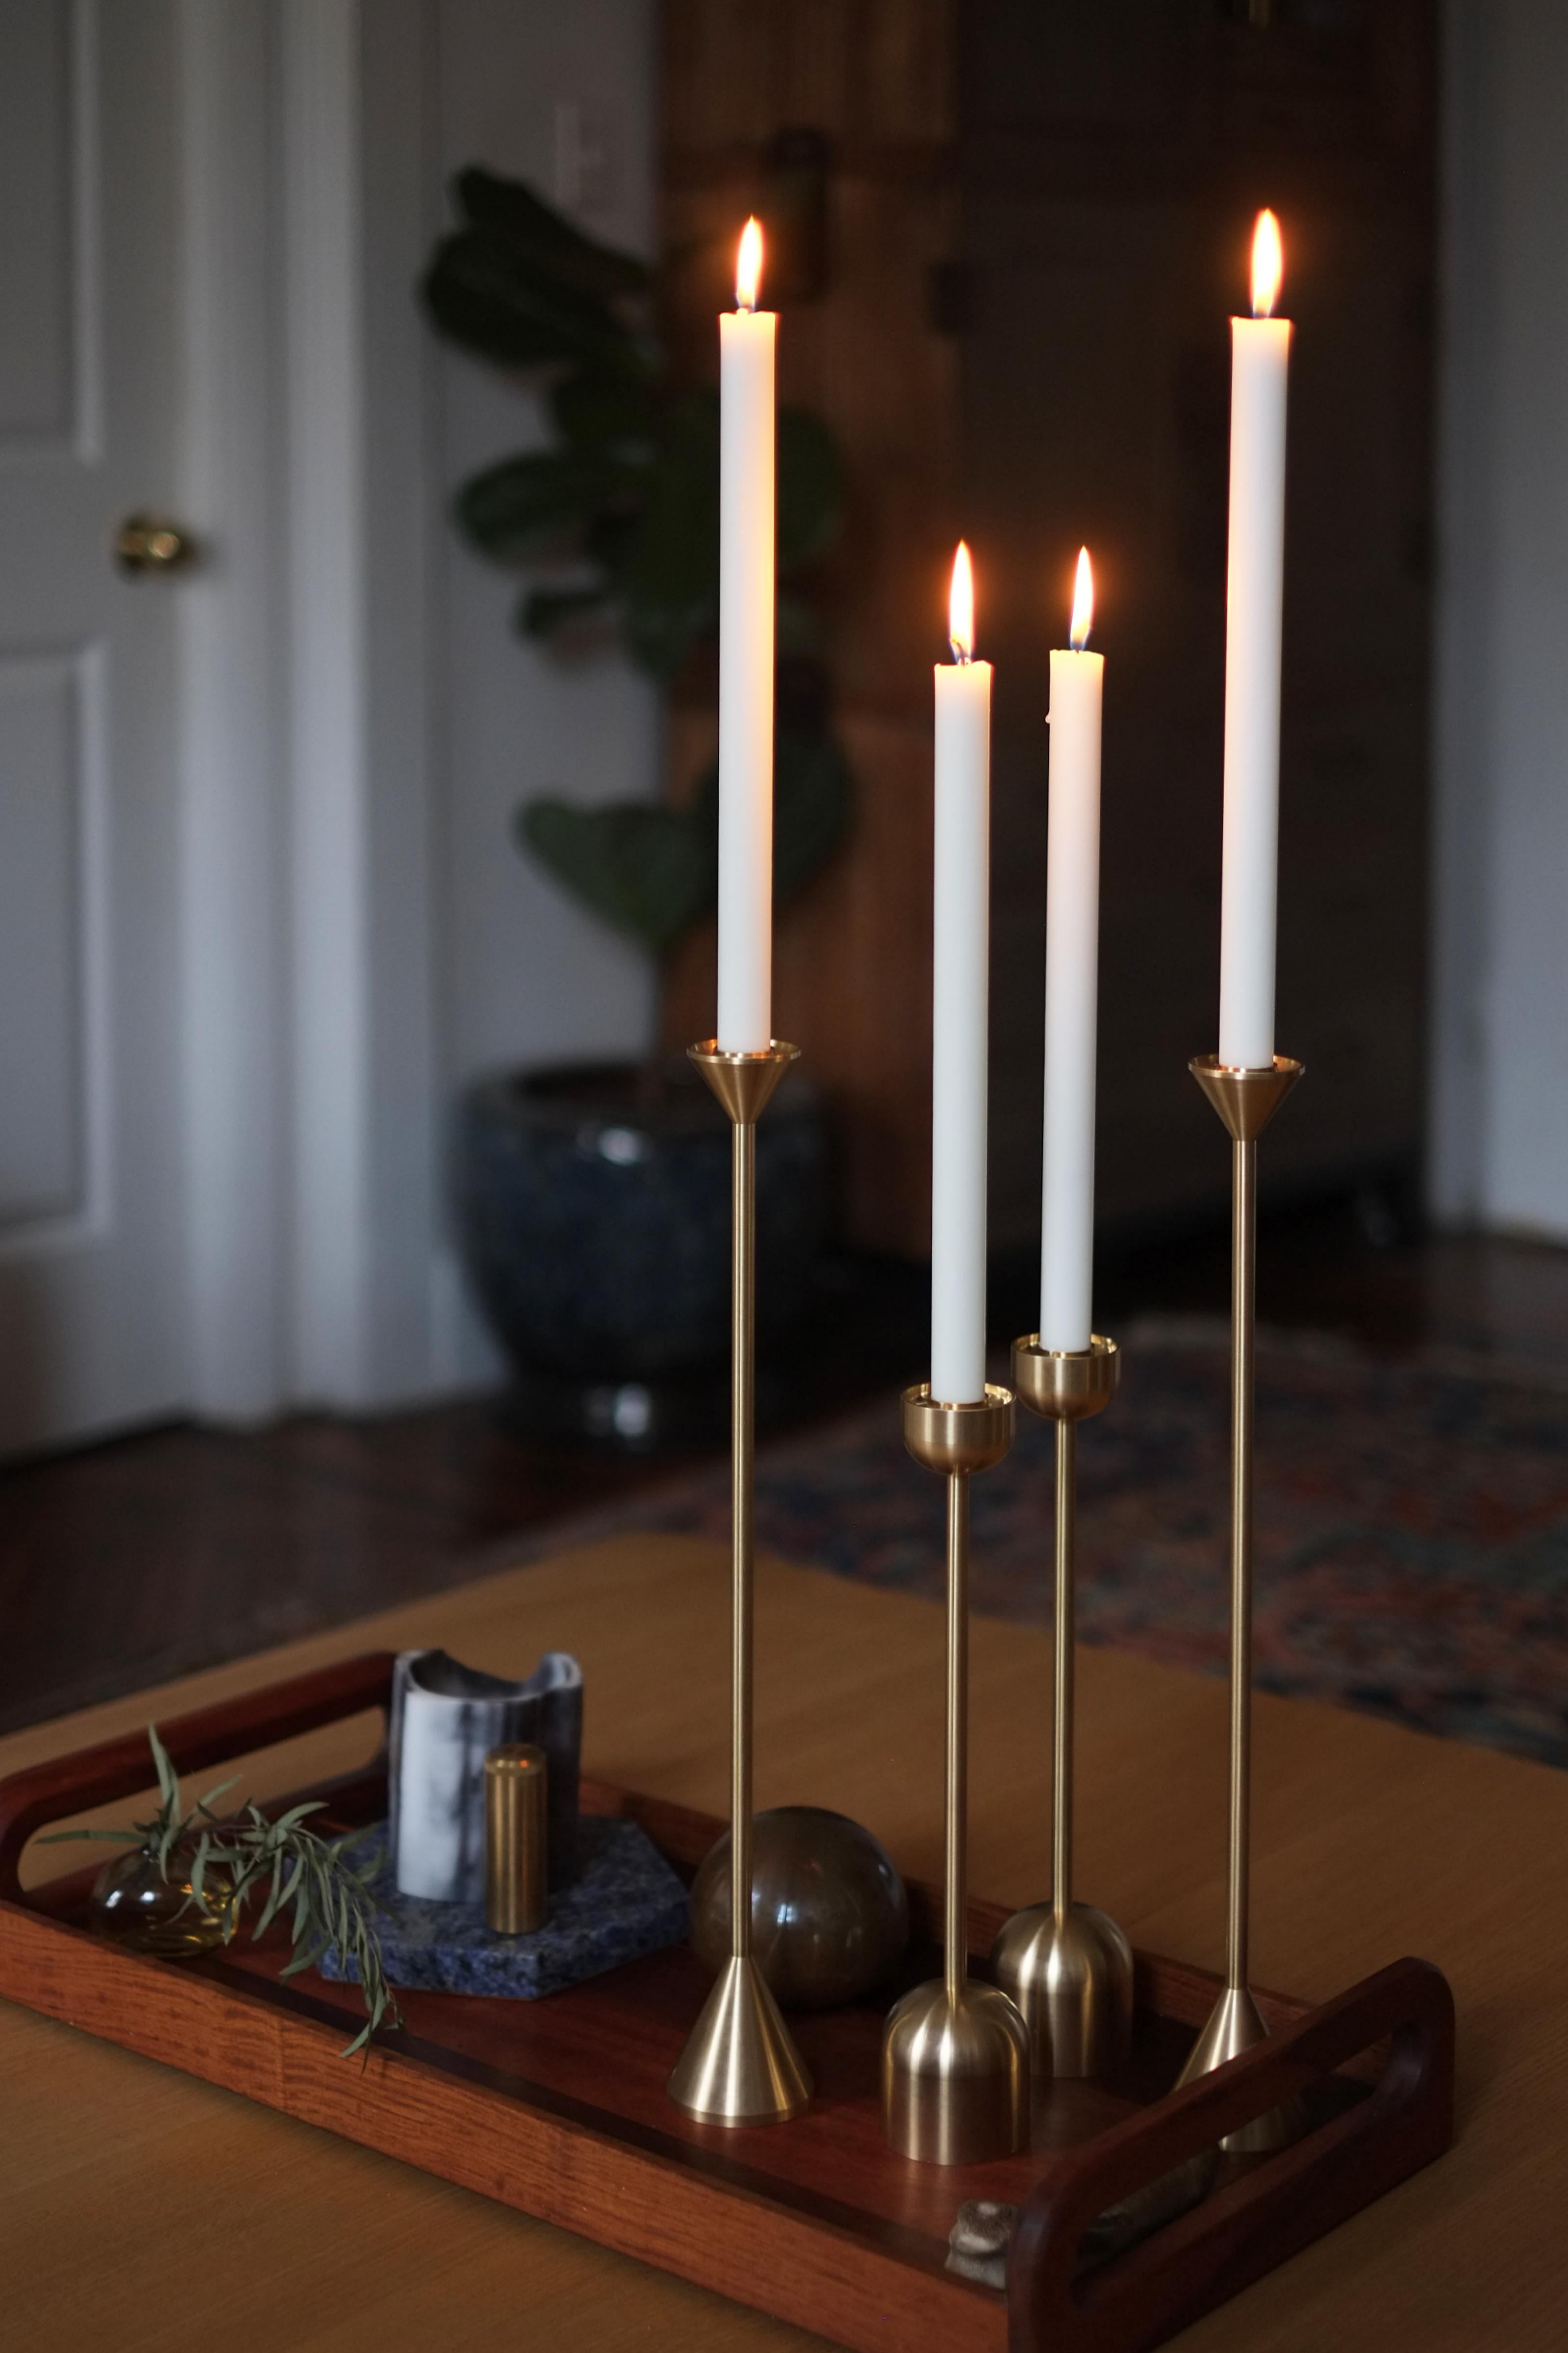 Das hohe, schlichte Design dieses Kerzenhalters aus Messing verleiht einem klassischen Gegenstand eine moderne Note und setzt einen eleganten Akzent in jedem Wohn- oder Esszimmer.  Der aus massivem Messing gefertigte Spindle-Kerzenhalter